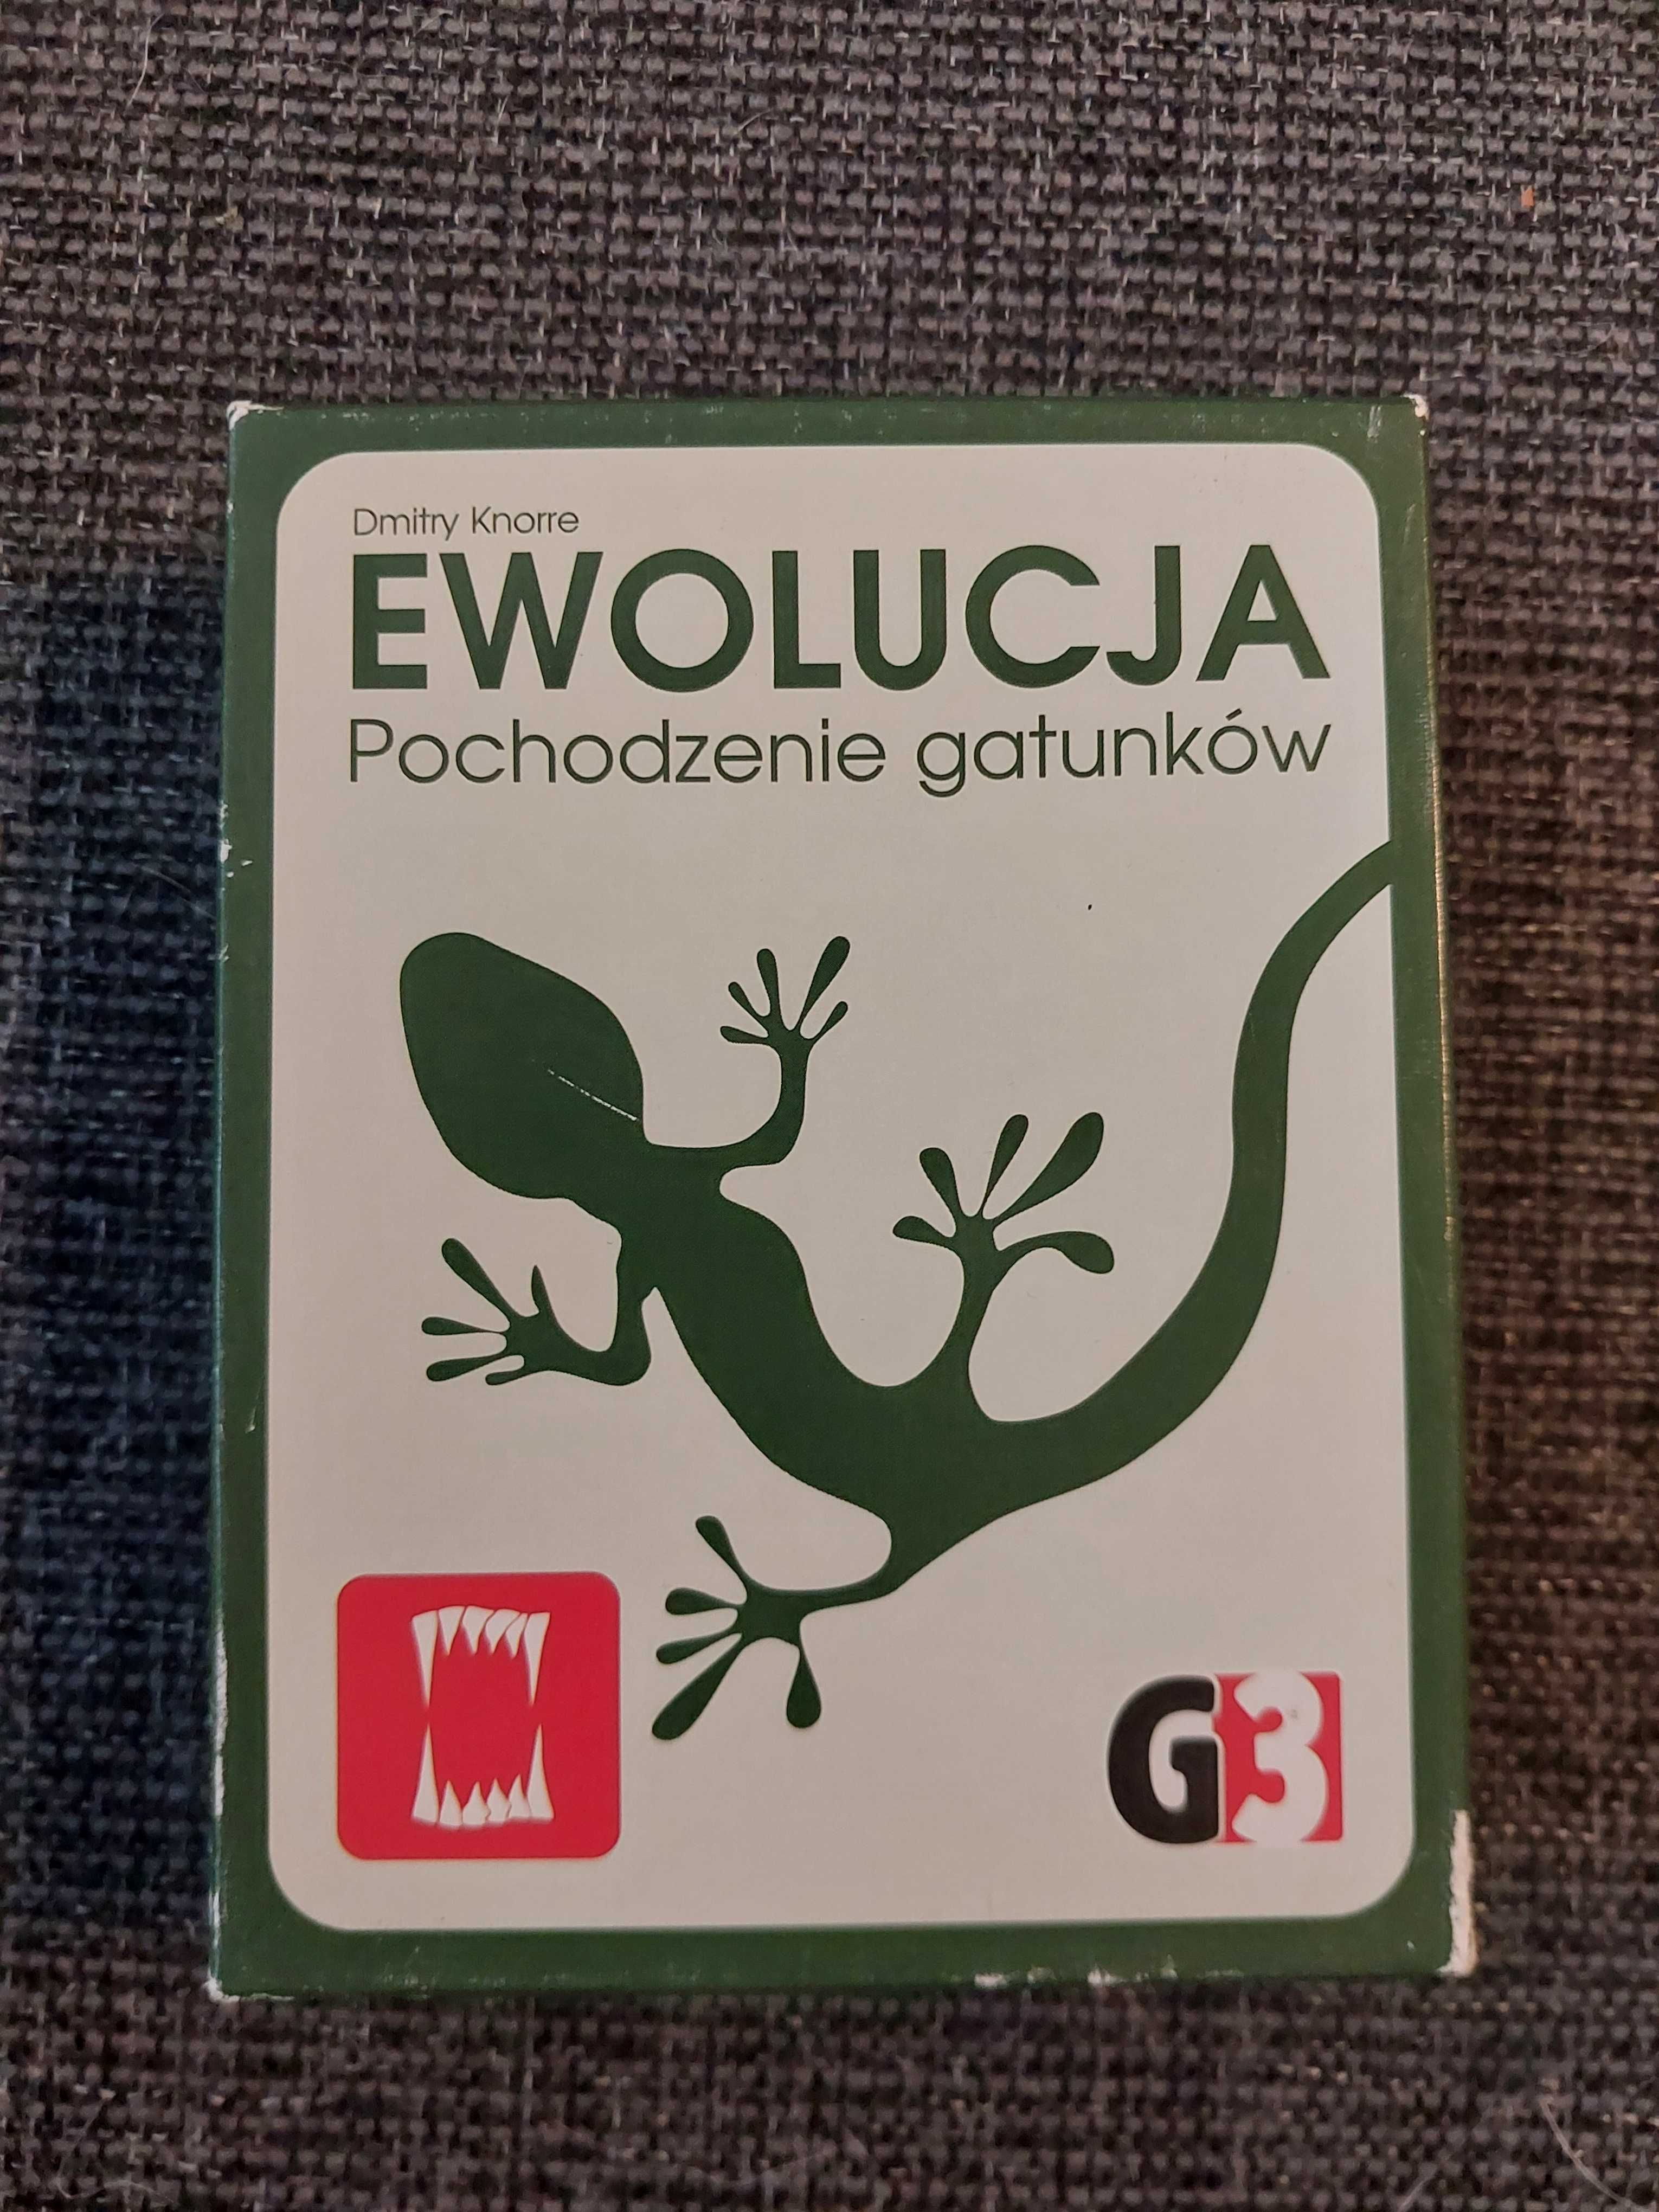 G3, gra towarzyska - Ewolucjal pochodzenie gatunków